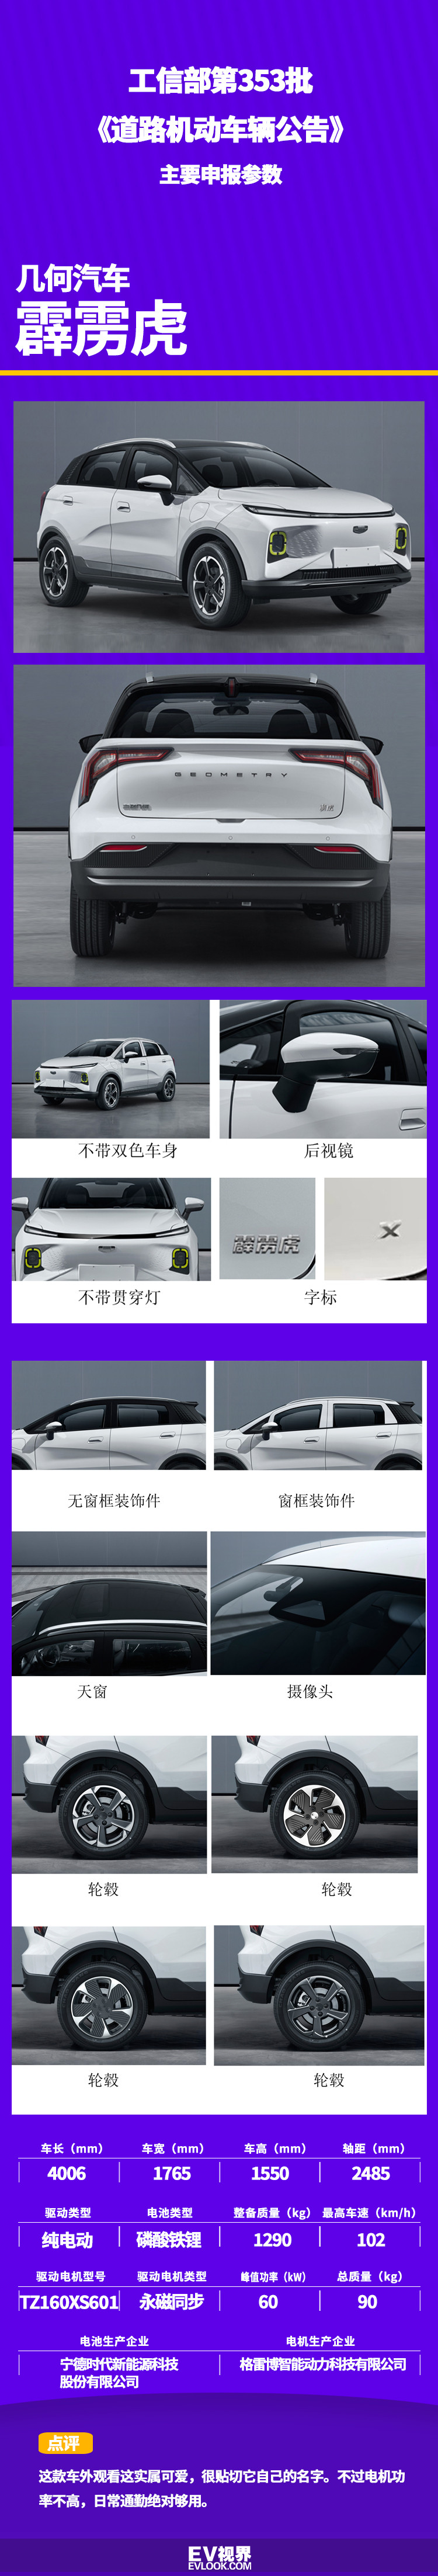 命名“霹雳虎” 几何汽车全新小型纯电SUV入选工信部产品公告